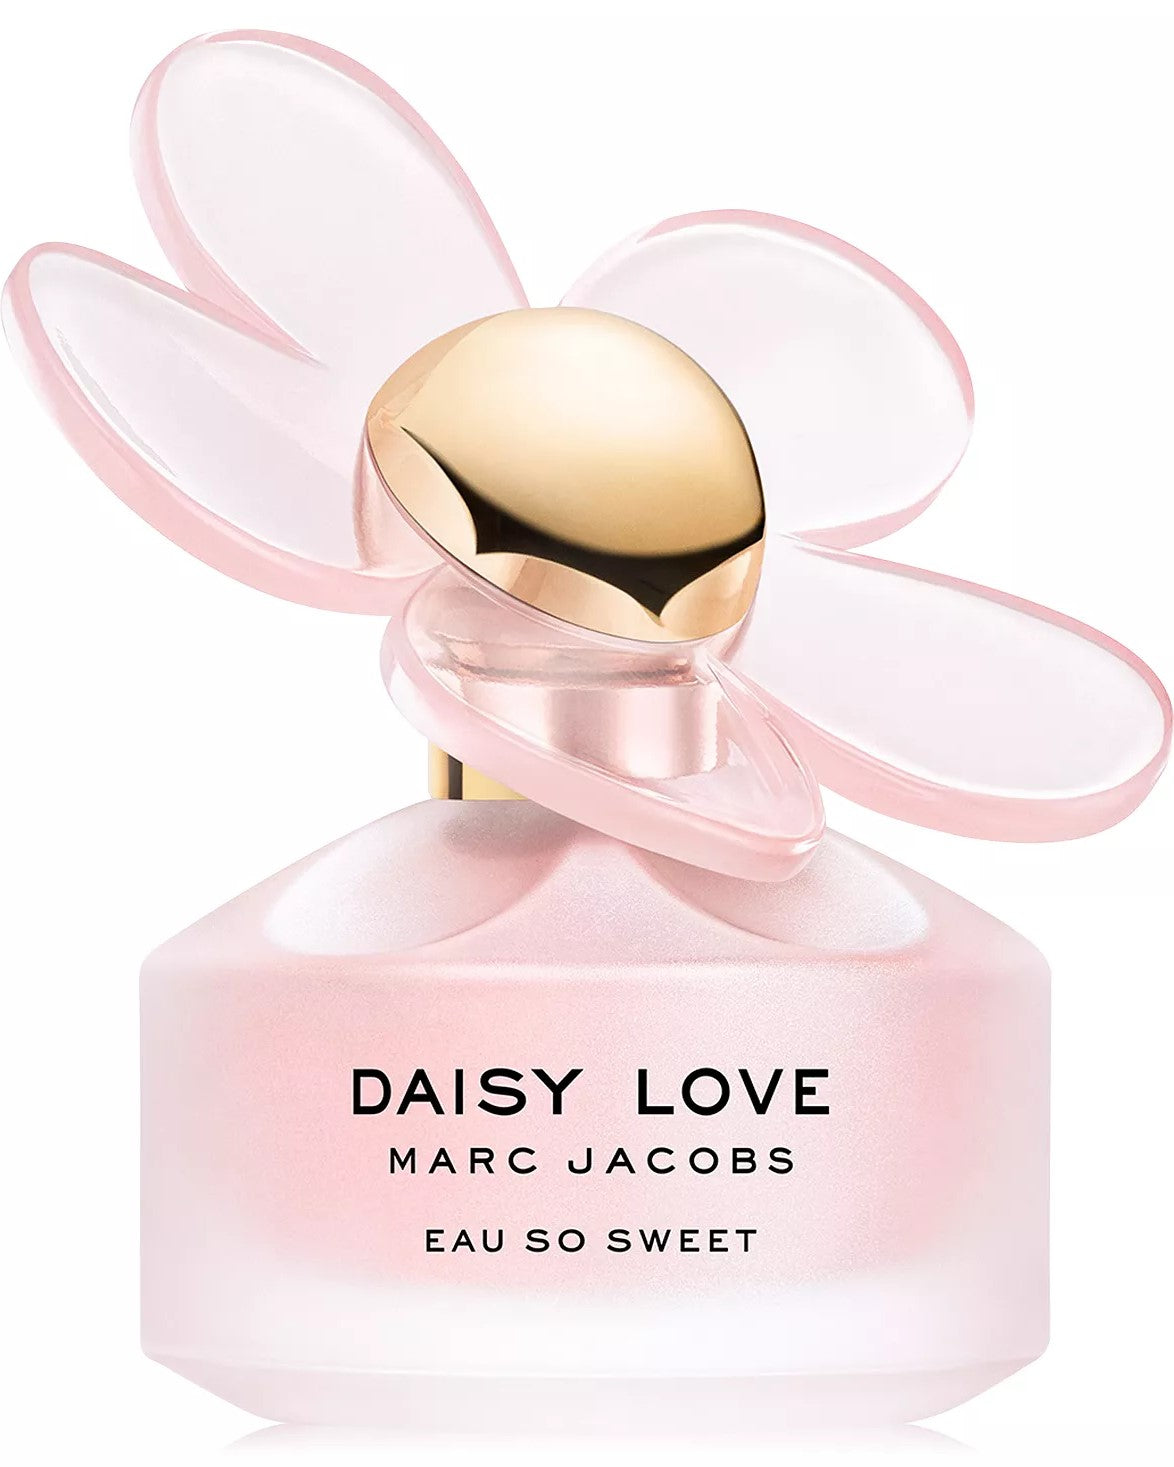 Daisy Love Eau So Sweet Eau de Toilette Spray, 3.3 oz